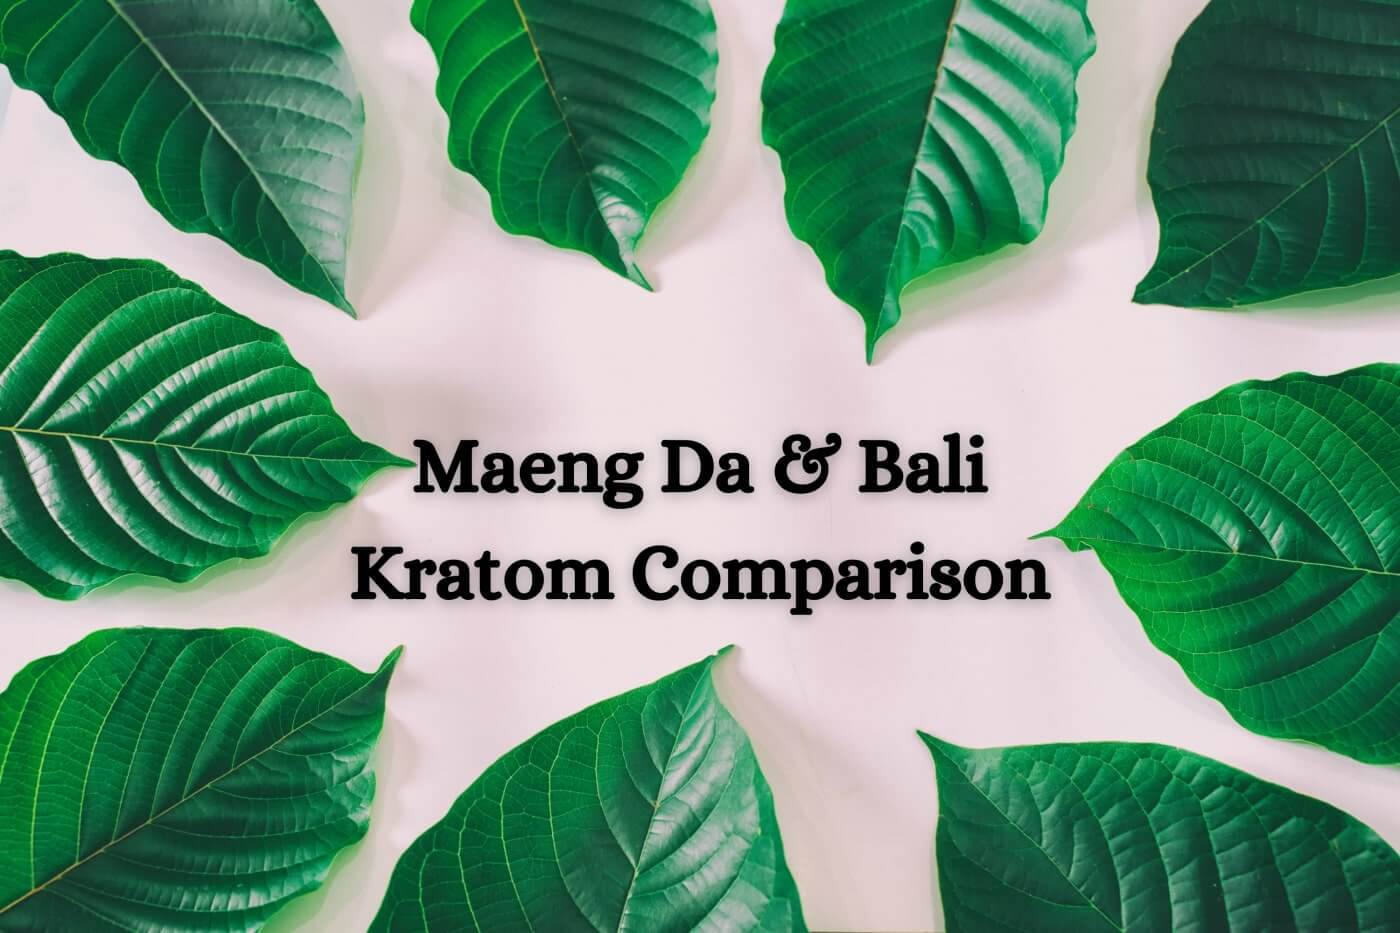 Maeng Da and Bali Kratom Comparison